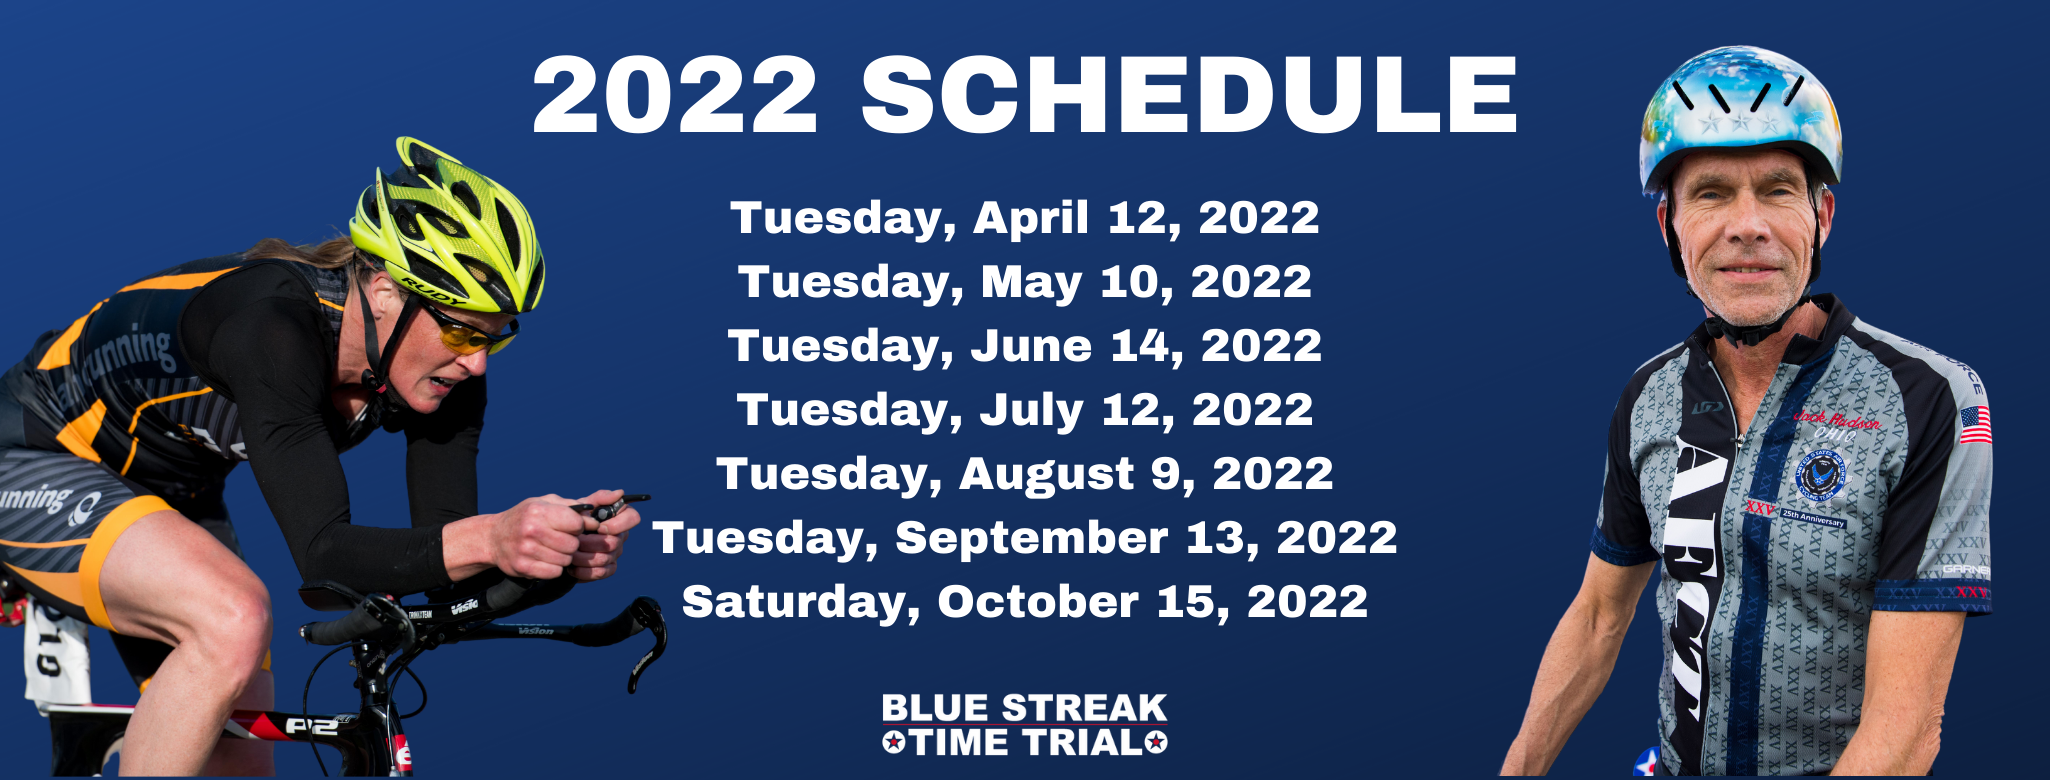 blue-streak-time-trial-2022-schedule